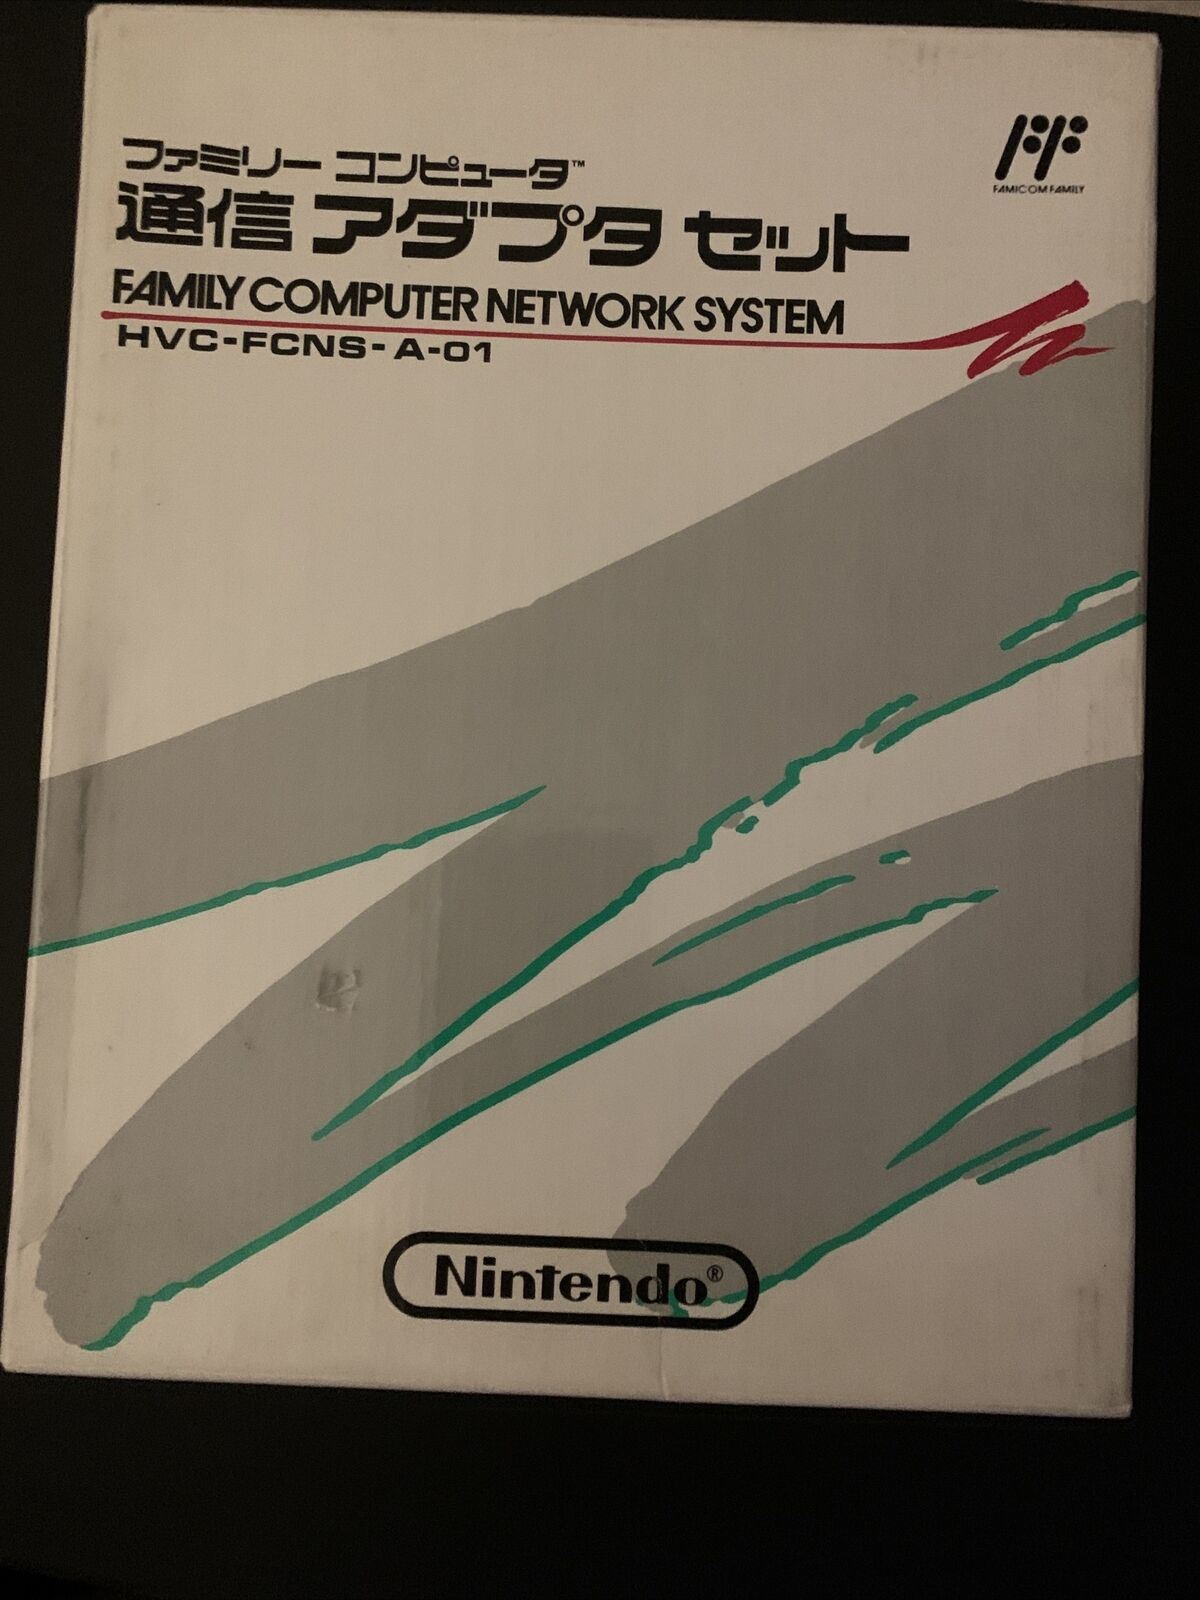 Nintendo Famicom - Family Computer Network System w Modem, Controller +Card RARE